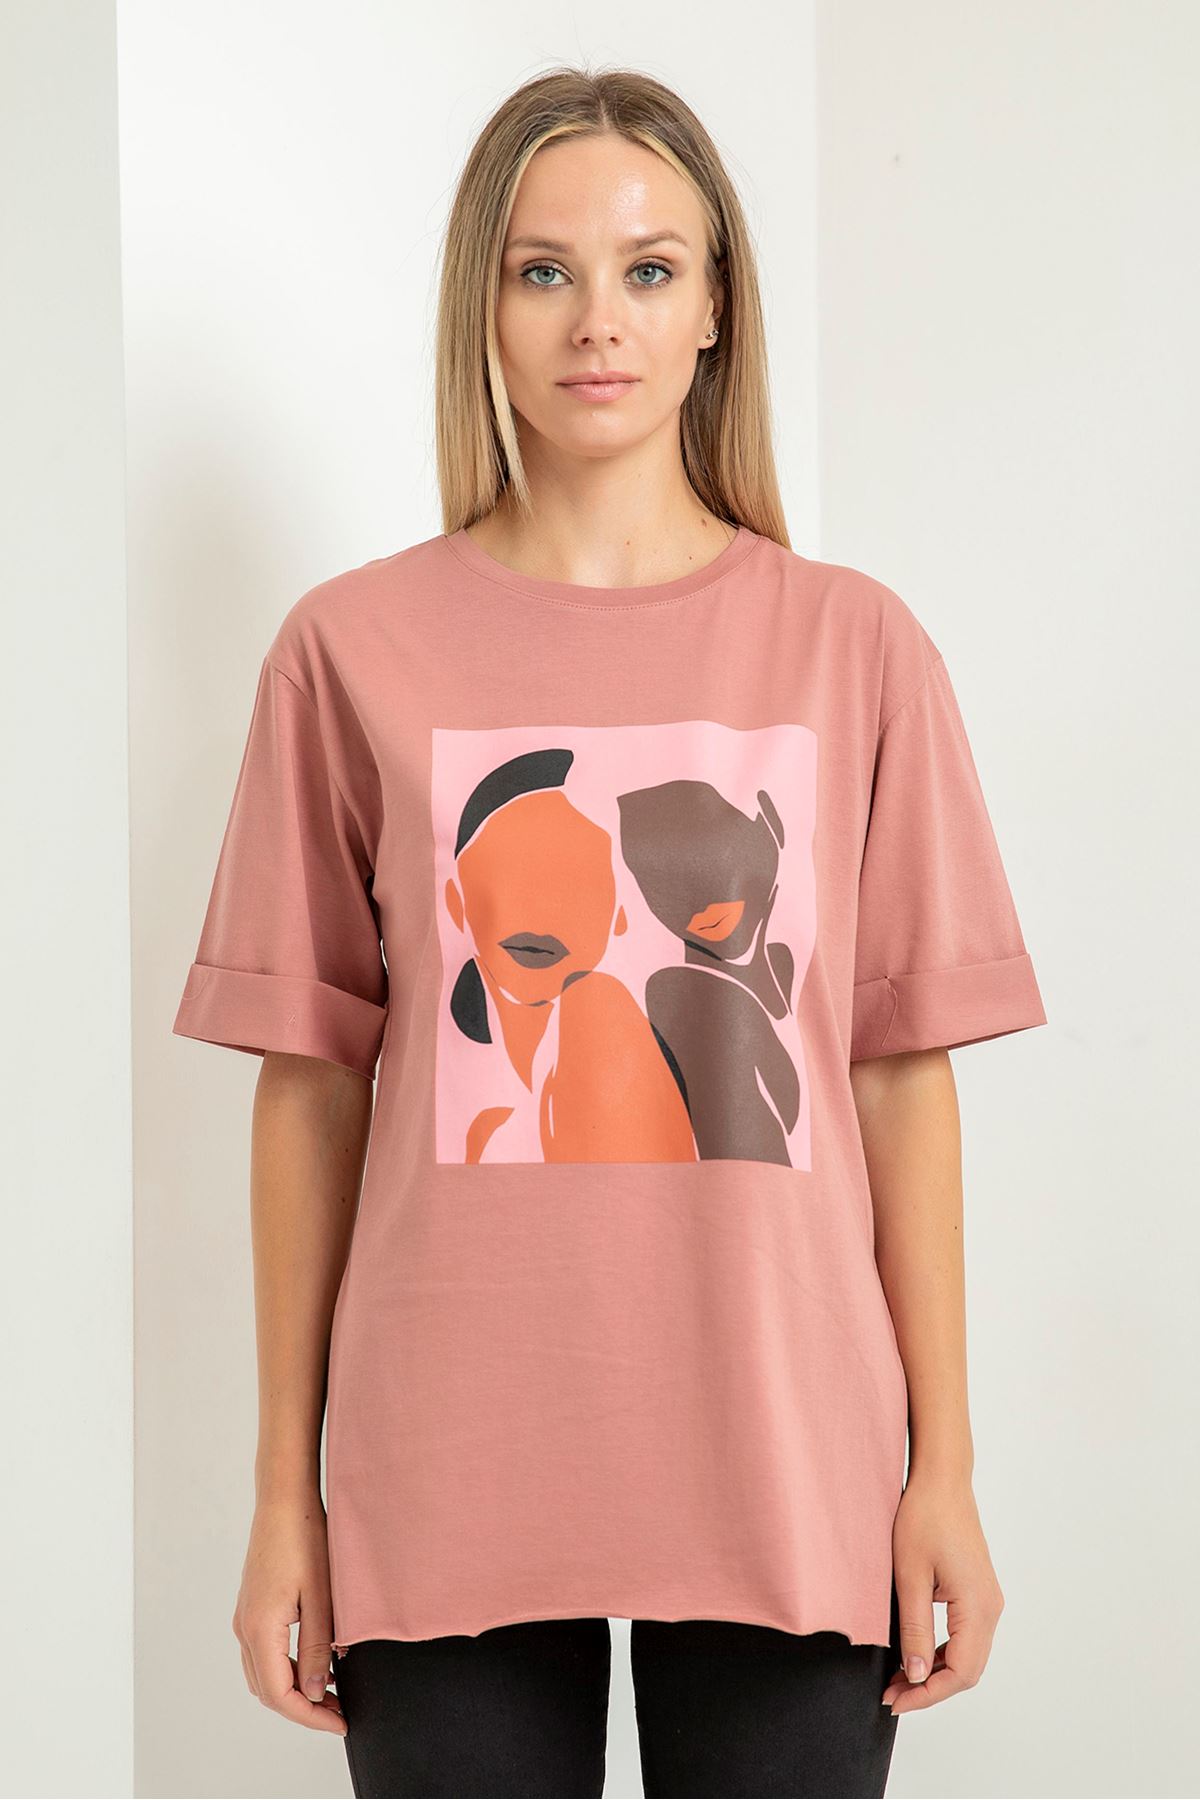 Short Sleeve Below Hip Comfy Fit Cloud Print Women'S T-Shirt - Light Pink